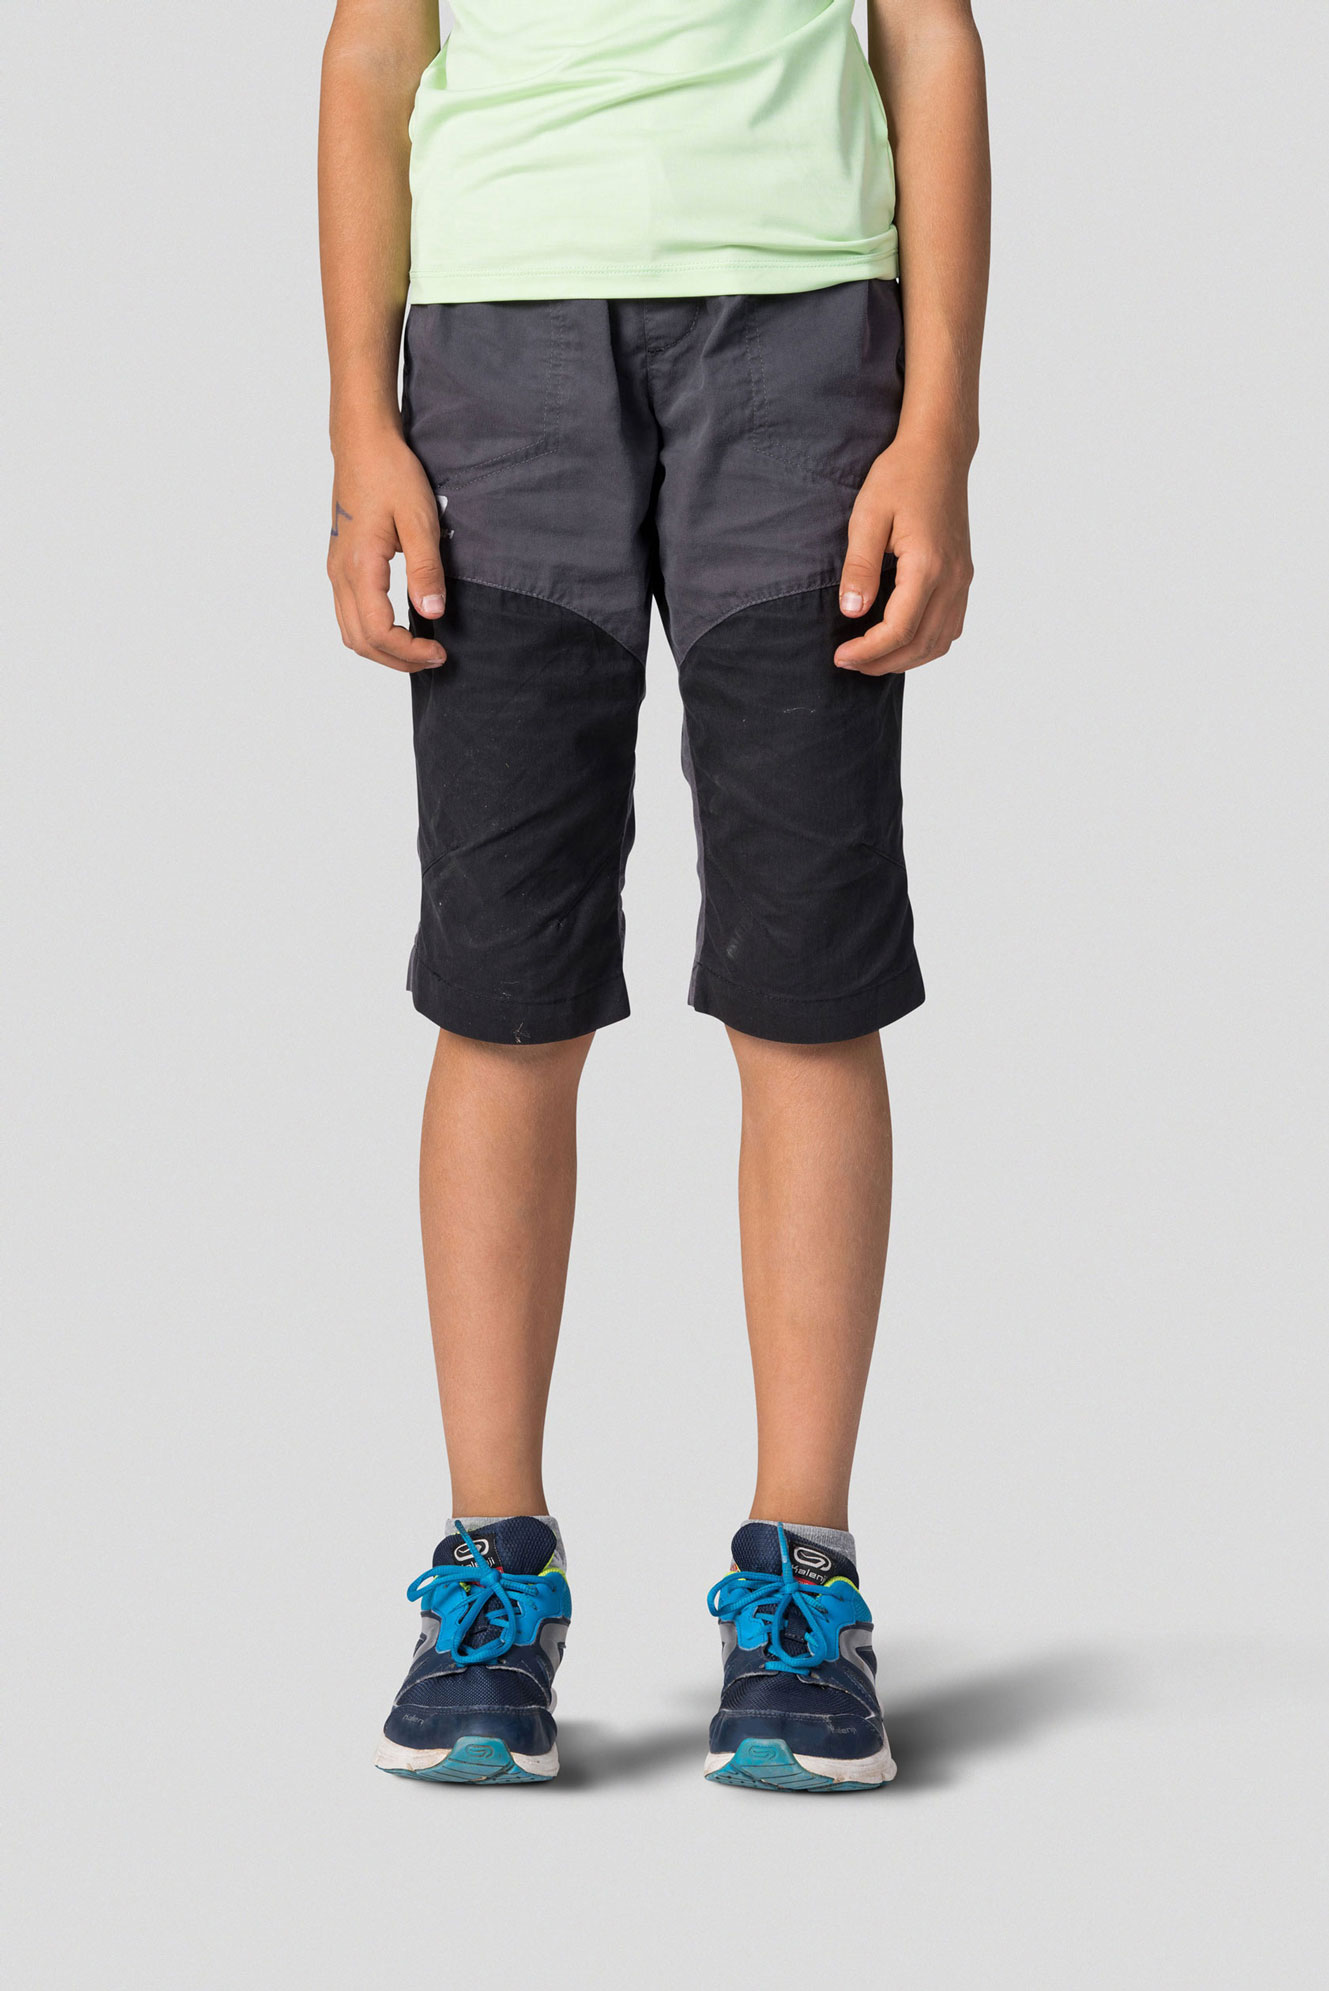 Kids’ outdoor Capri pants